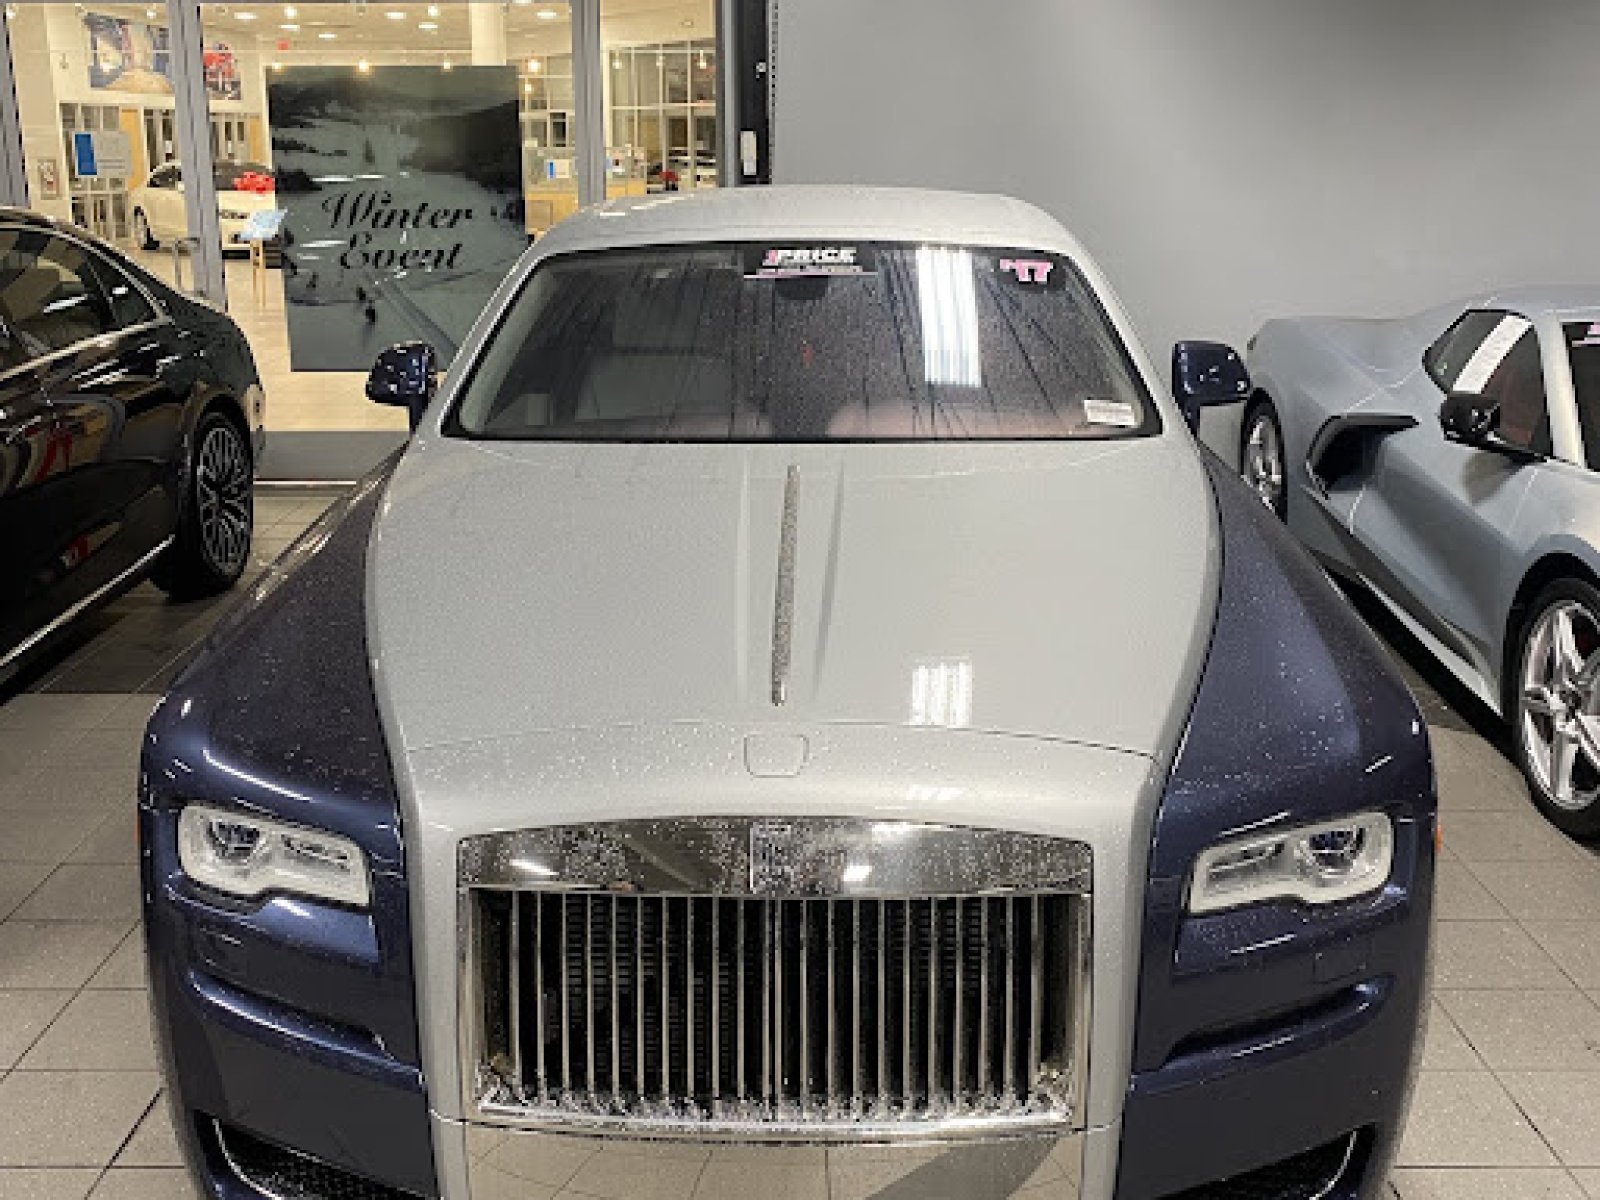 2019 Rolls-Royce Ghost